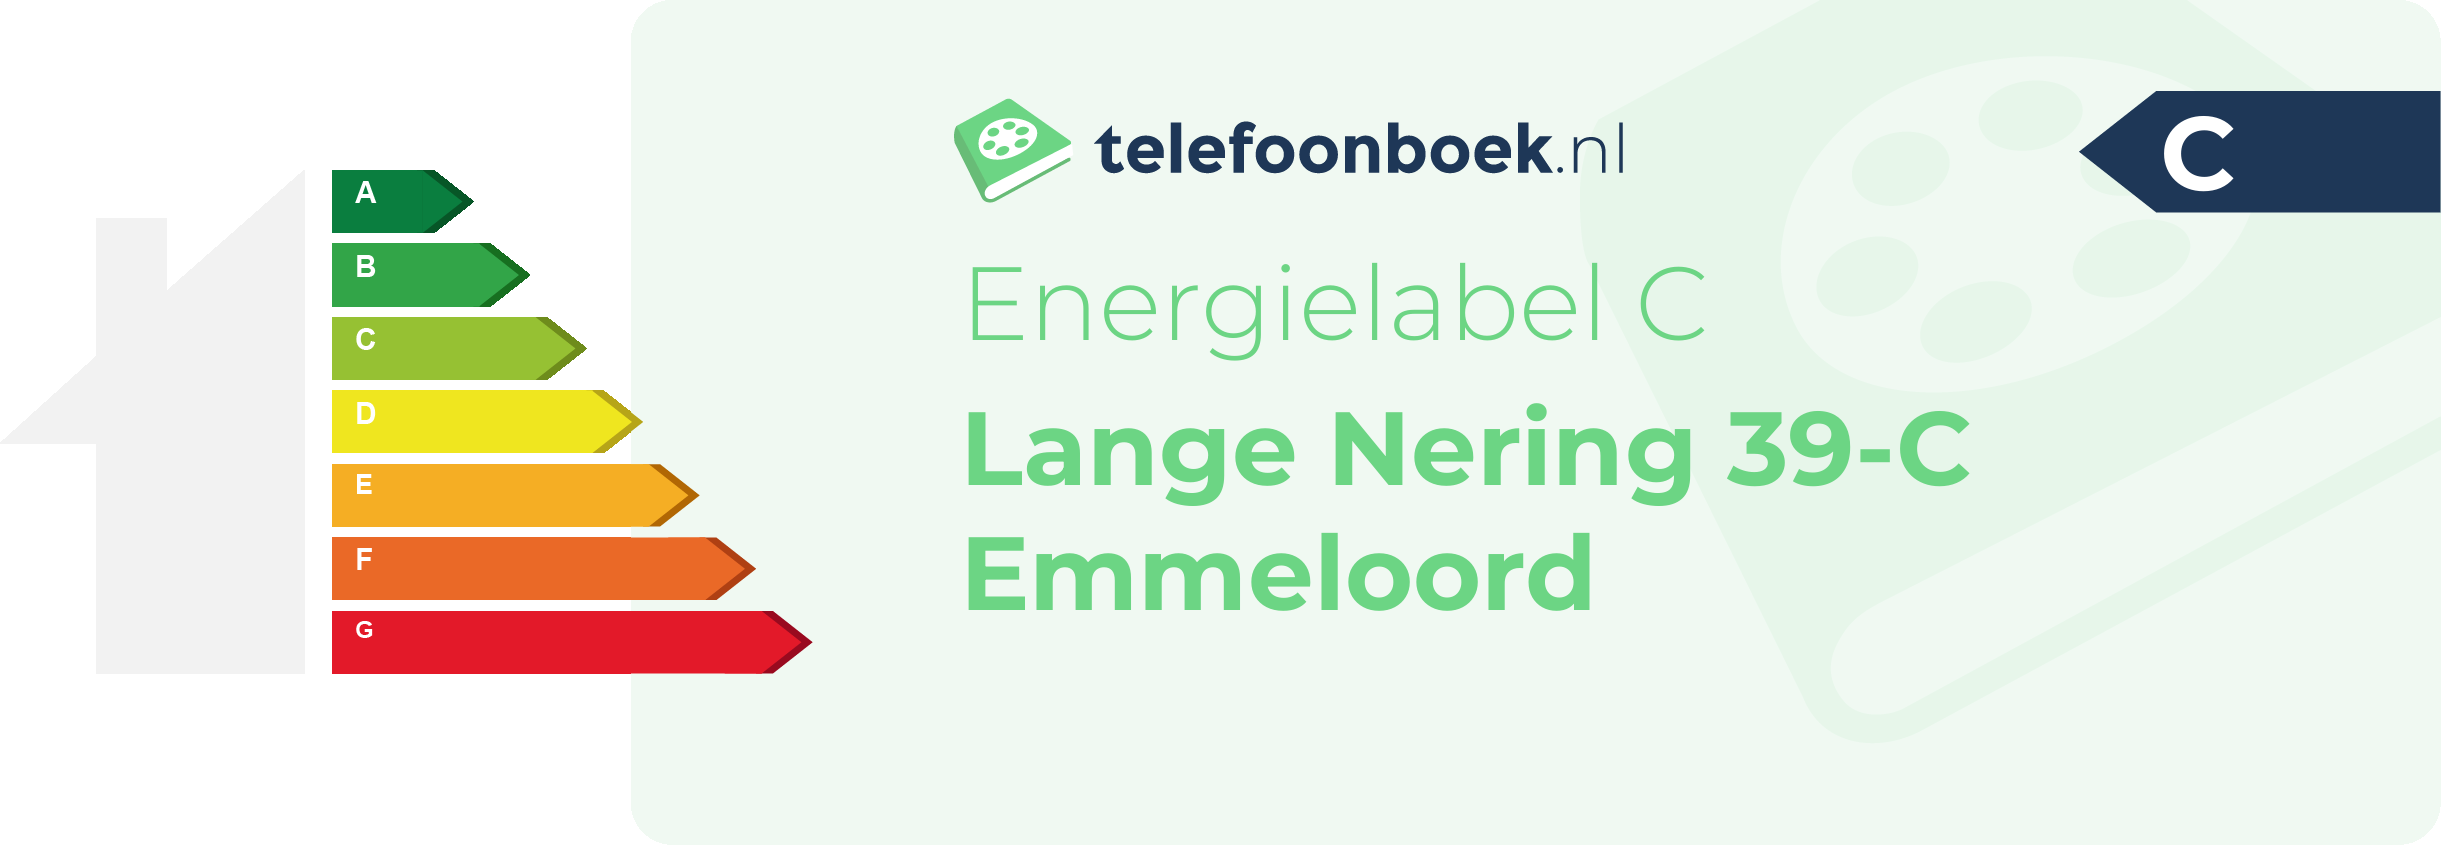 Energielabel Lange Nering 39-C Emmeloord